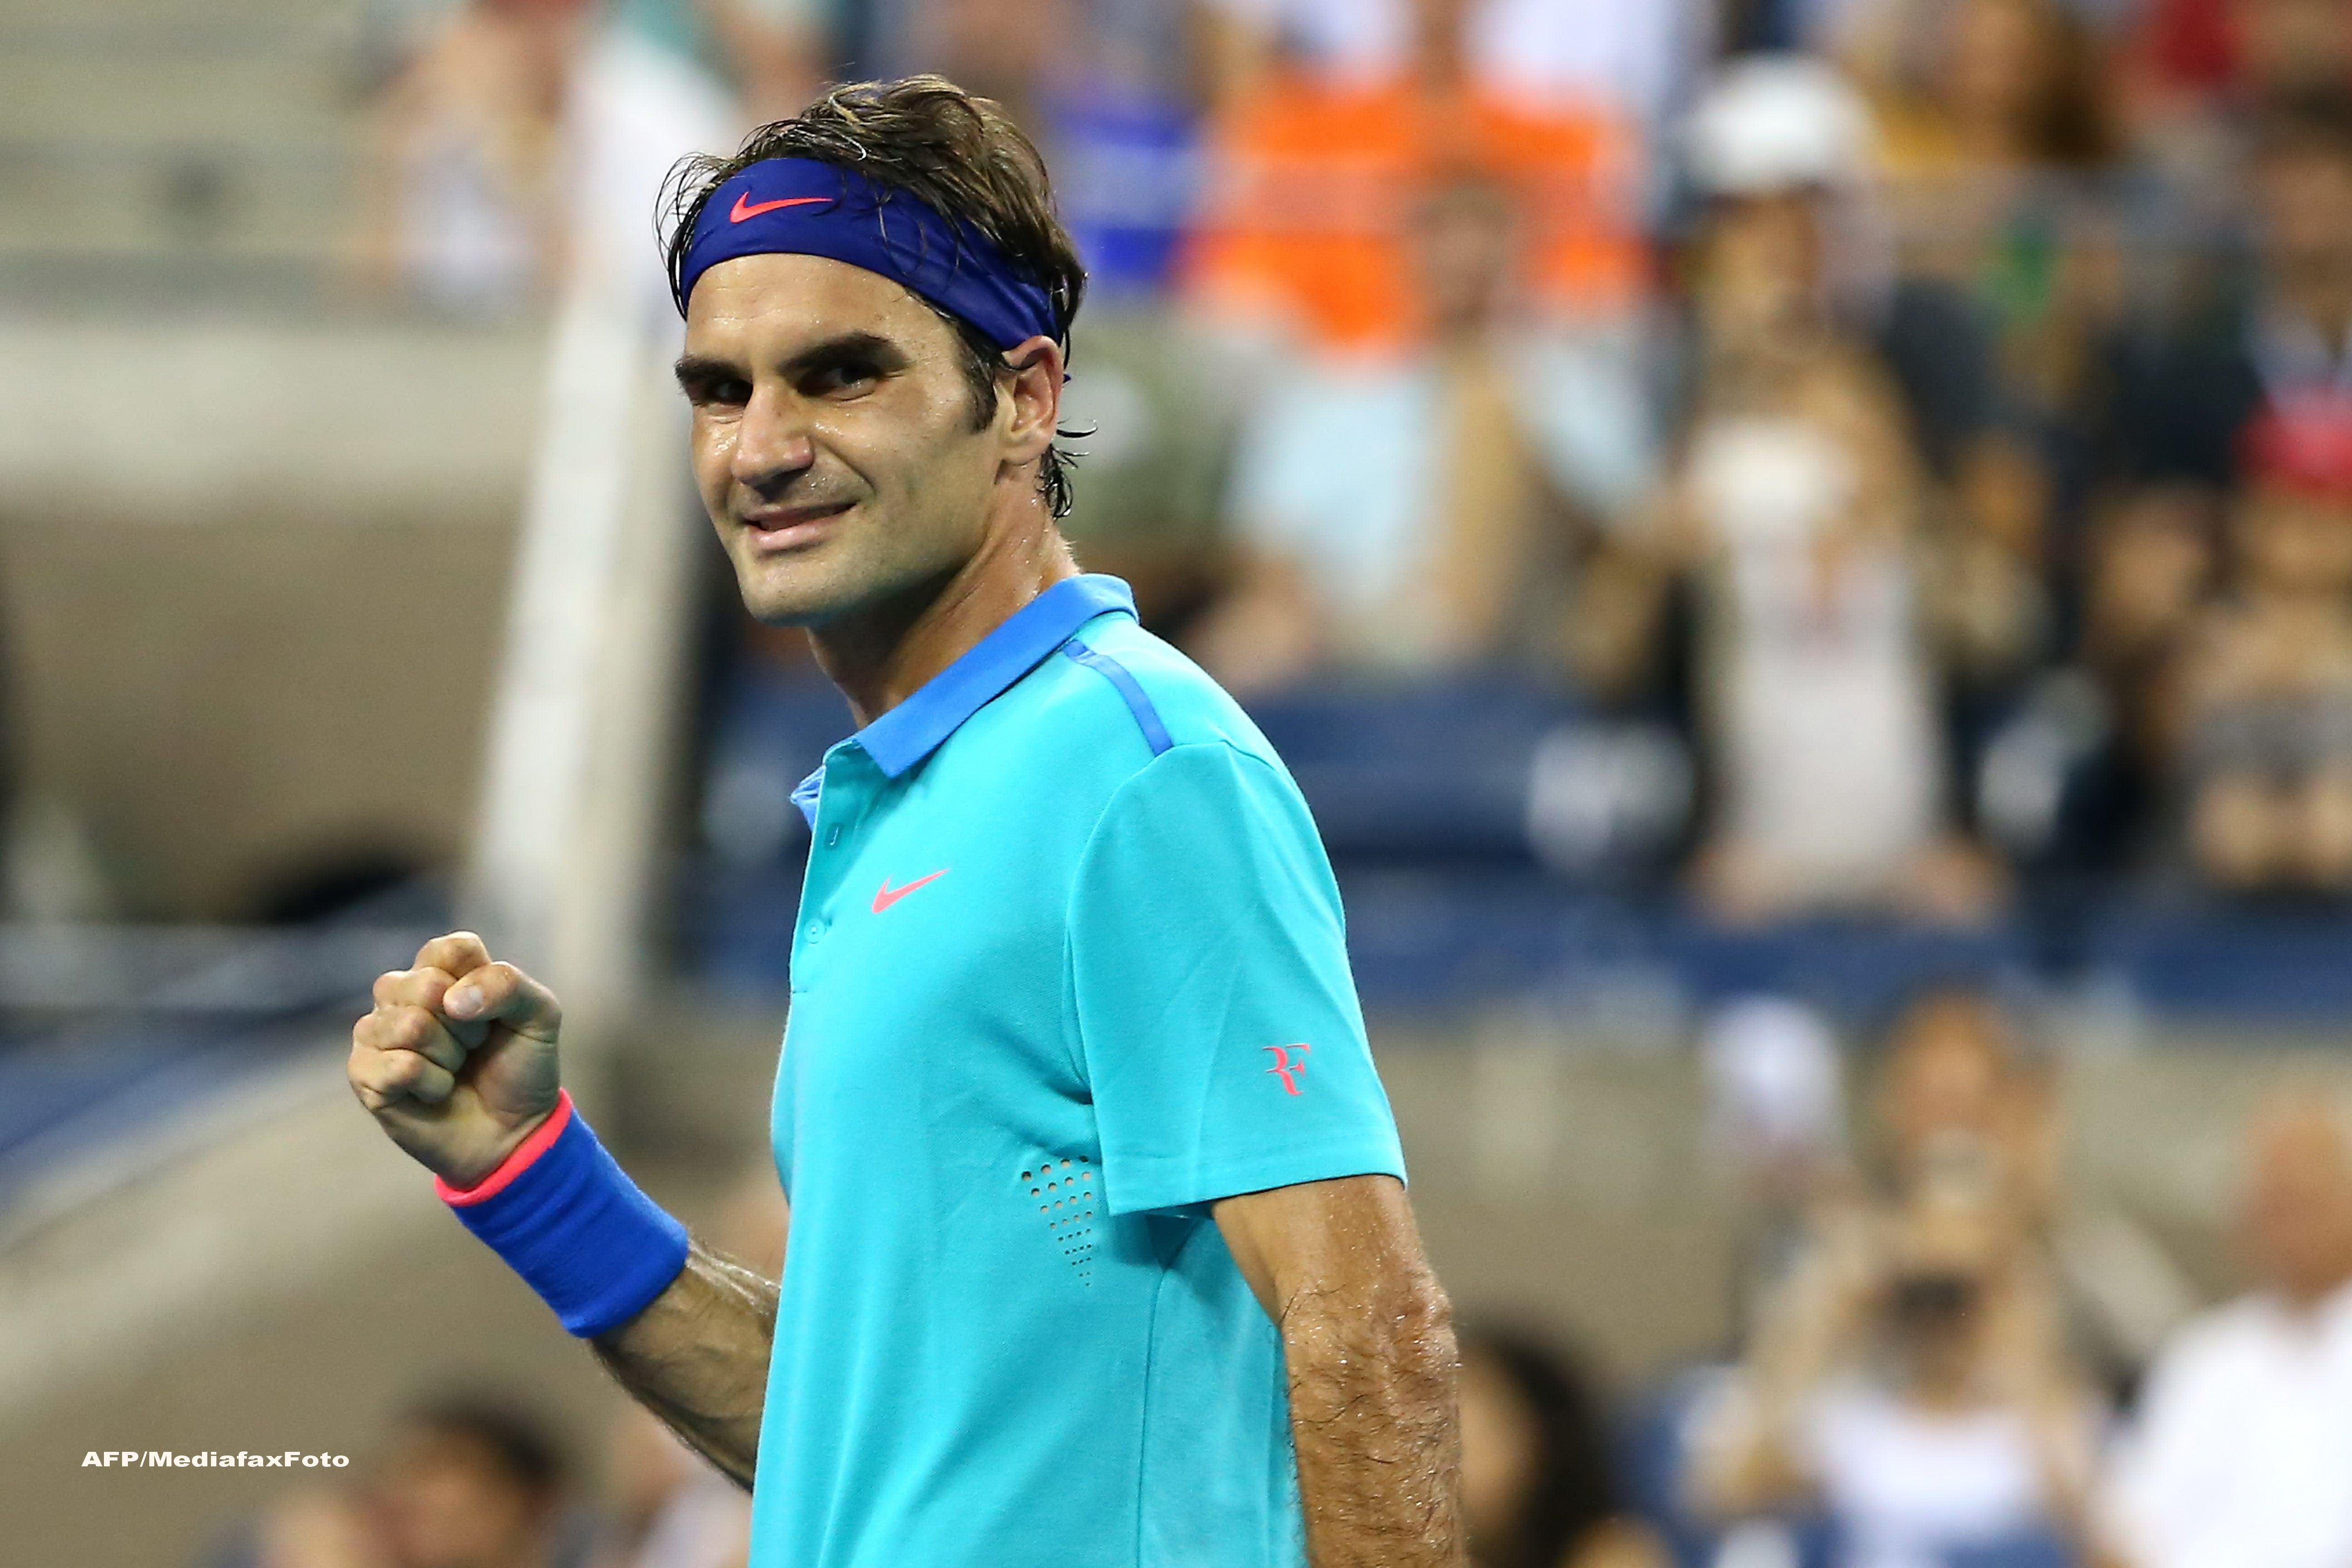 Roger Federer a uimit publicul de la US Open cu o lovitura de maestru. A fost aplaudat chiar si de Michael Jordan. VIDEO